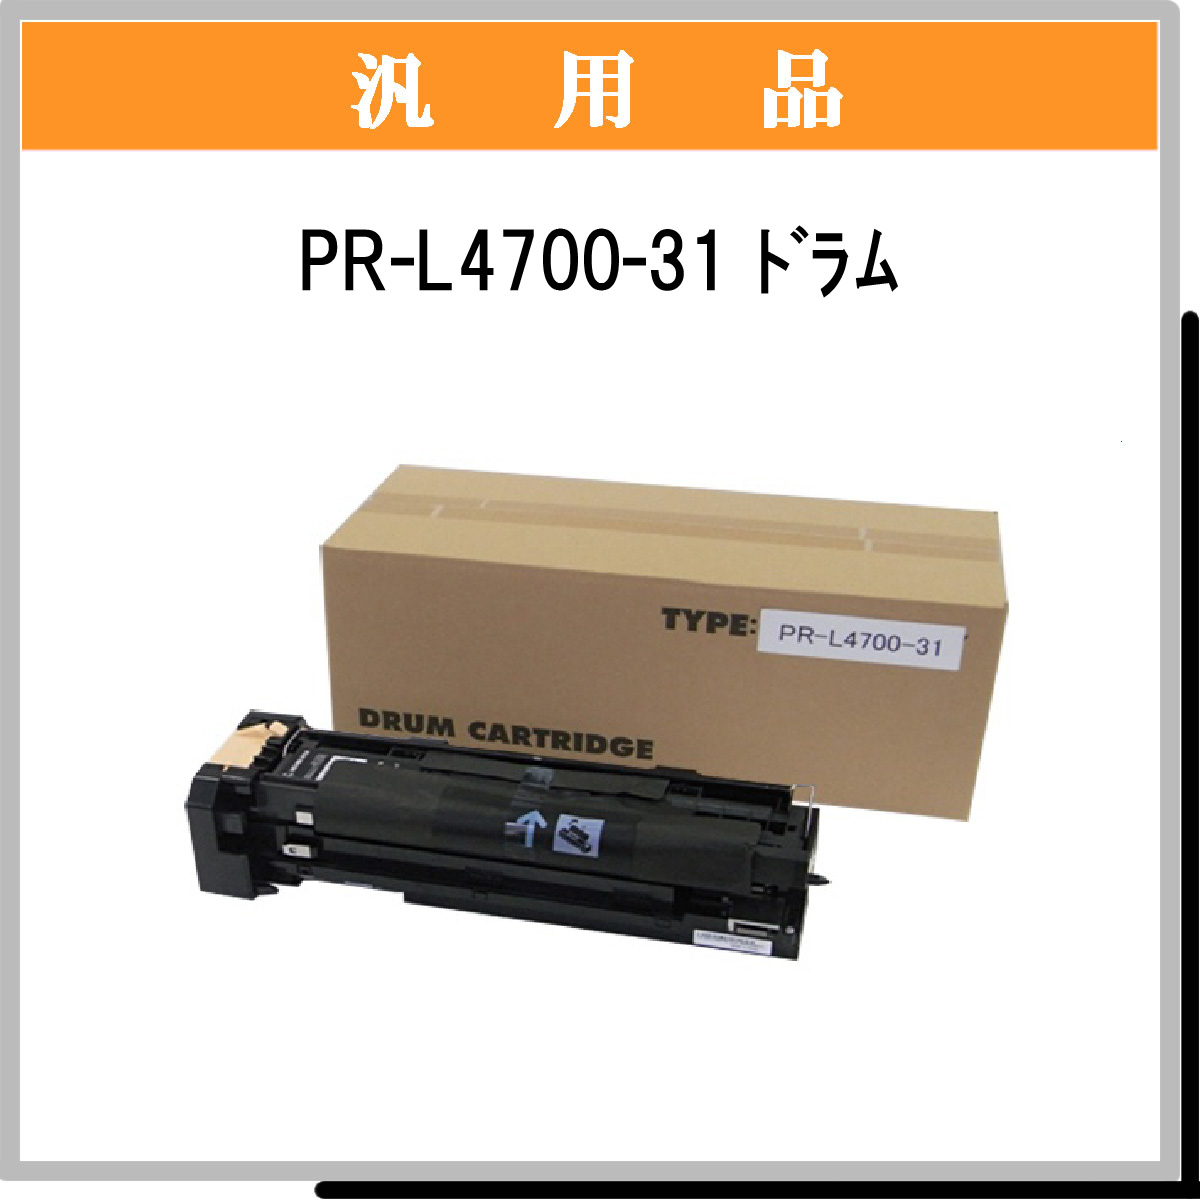 超特価即納 NEC（日本電気）PR-L4600-31 ドラムカートリッジ 汎用品 みやこオンラインショッピング 通販 PayPayモール 